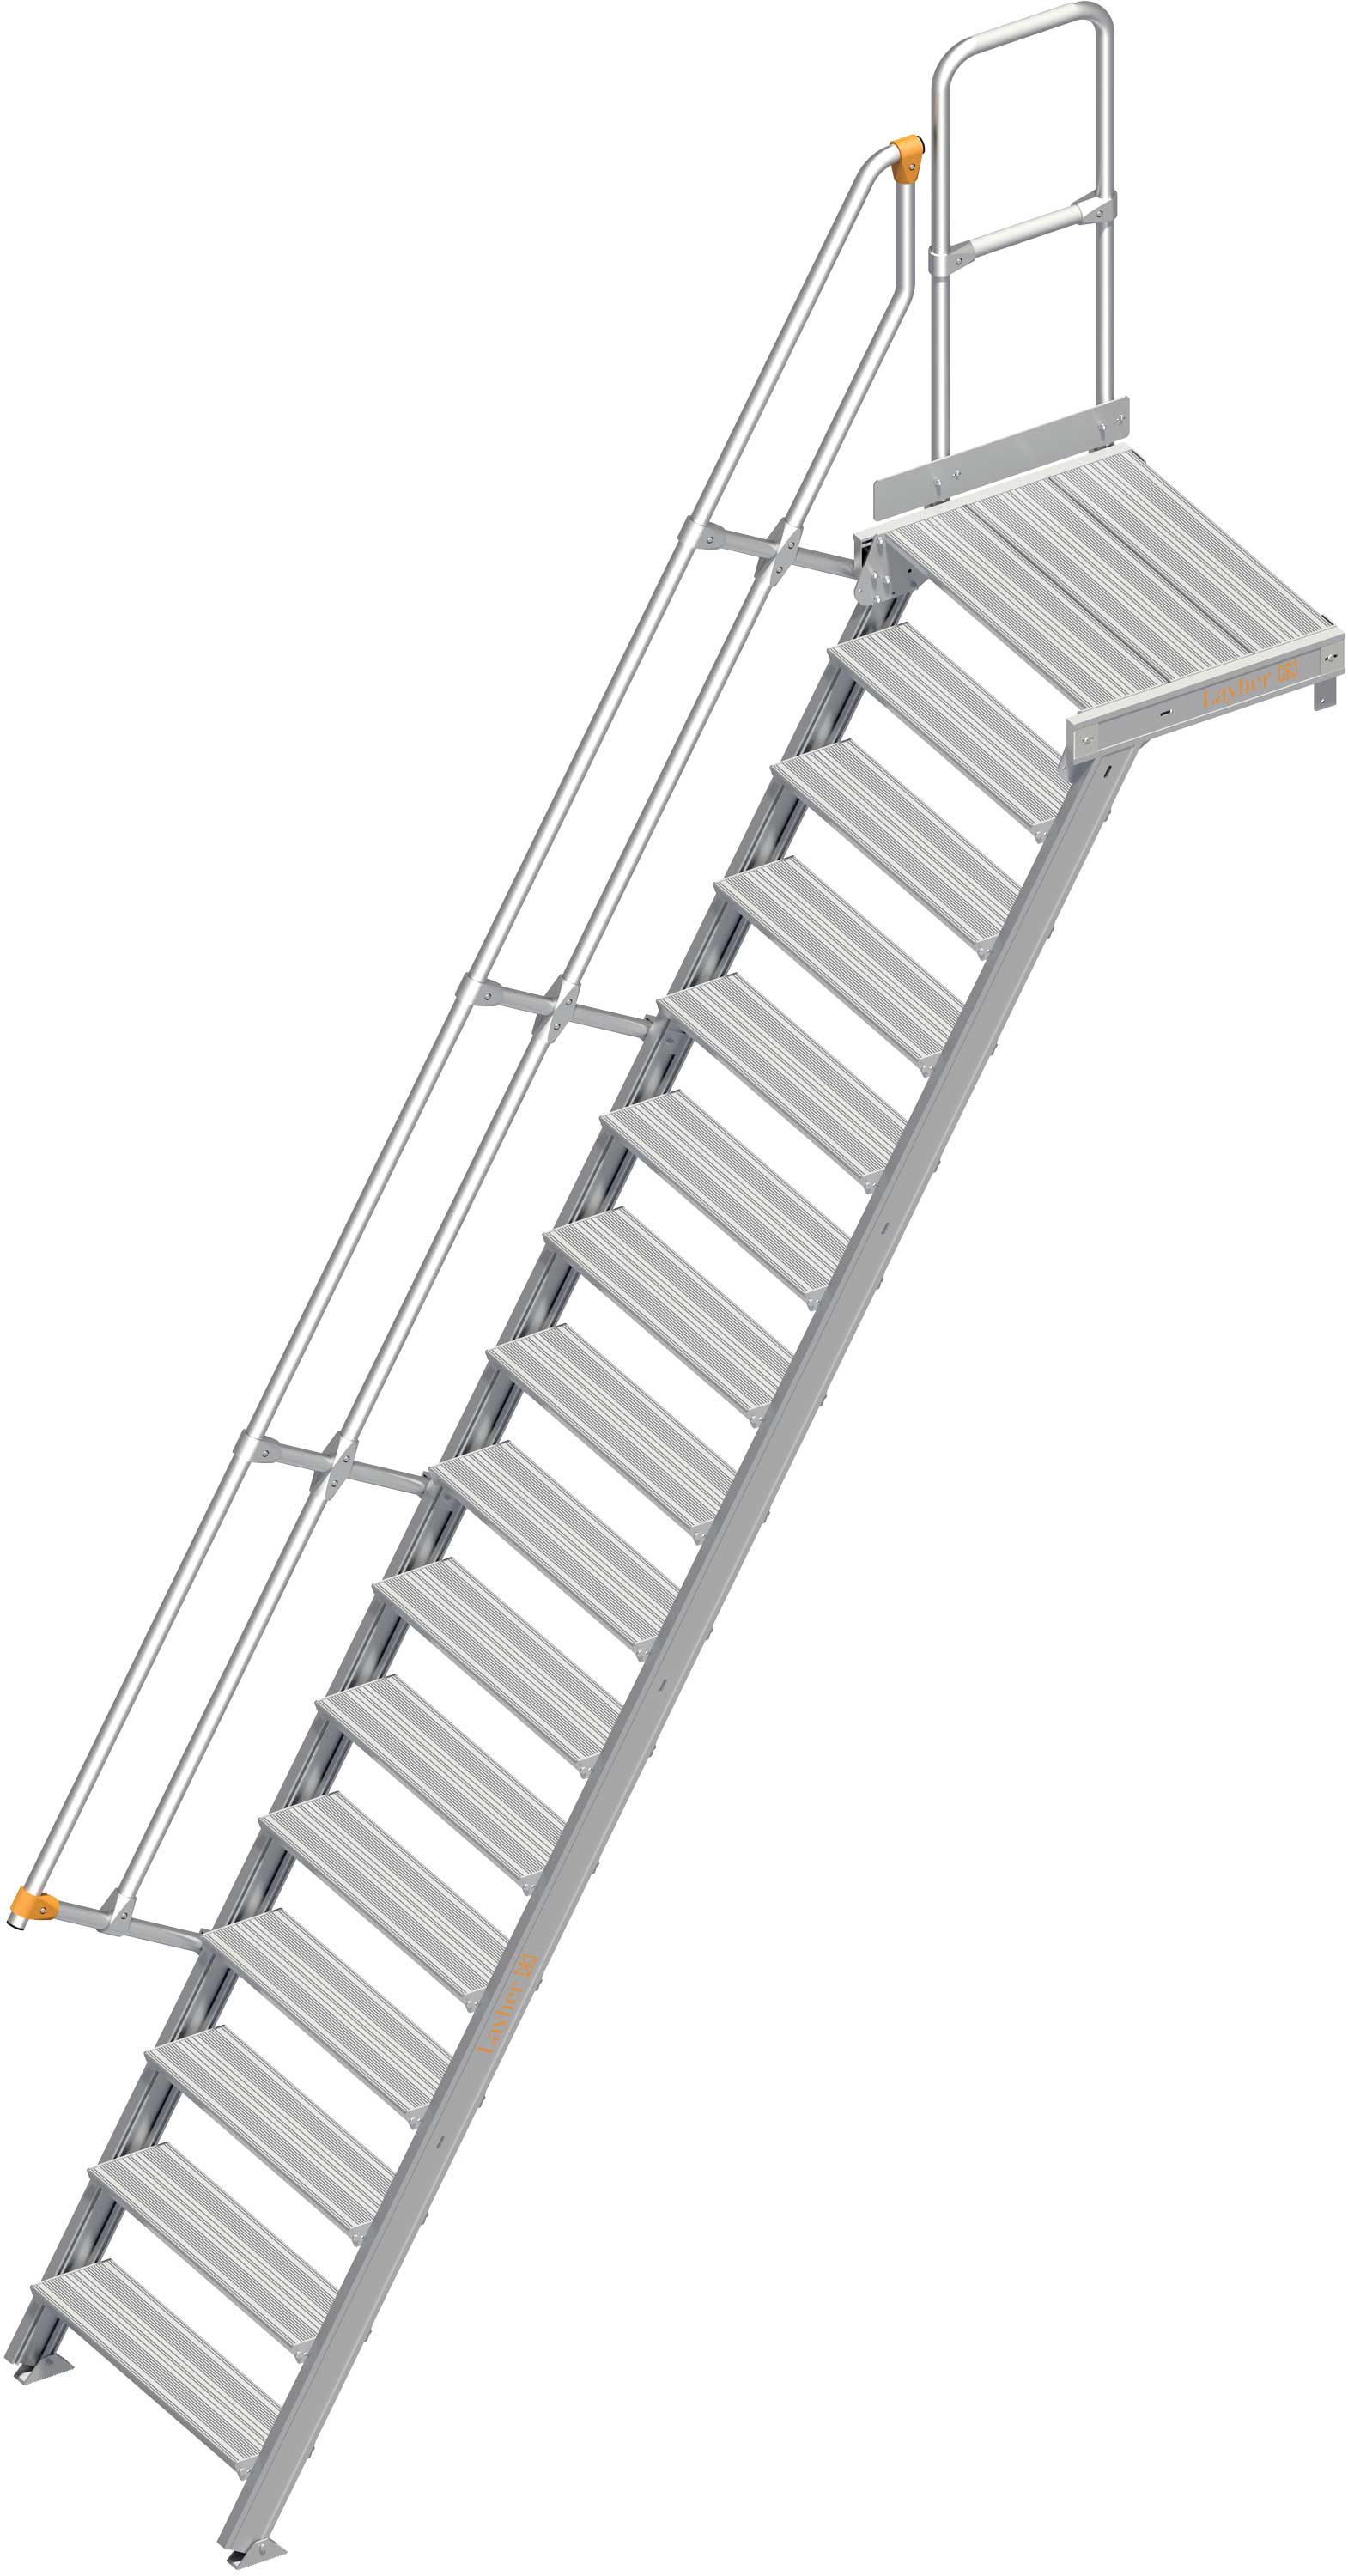 Layher Plattformtreppe 60° 16 Stufen - 600 mm breit